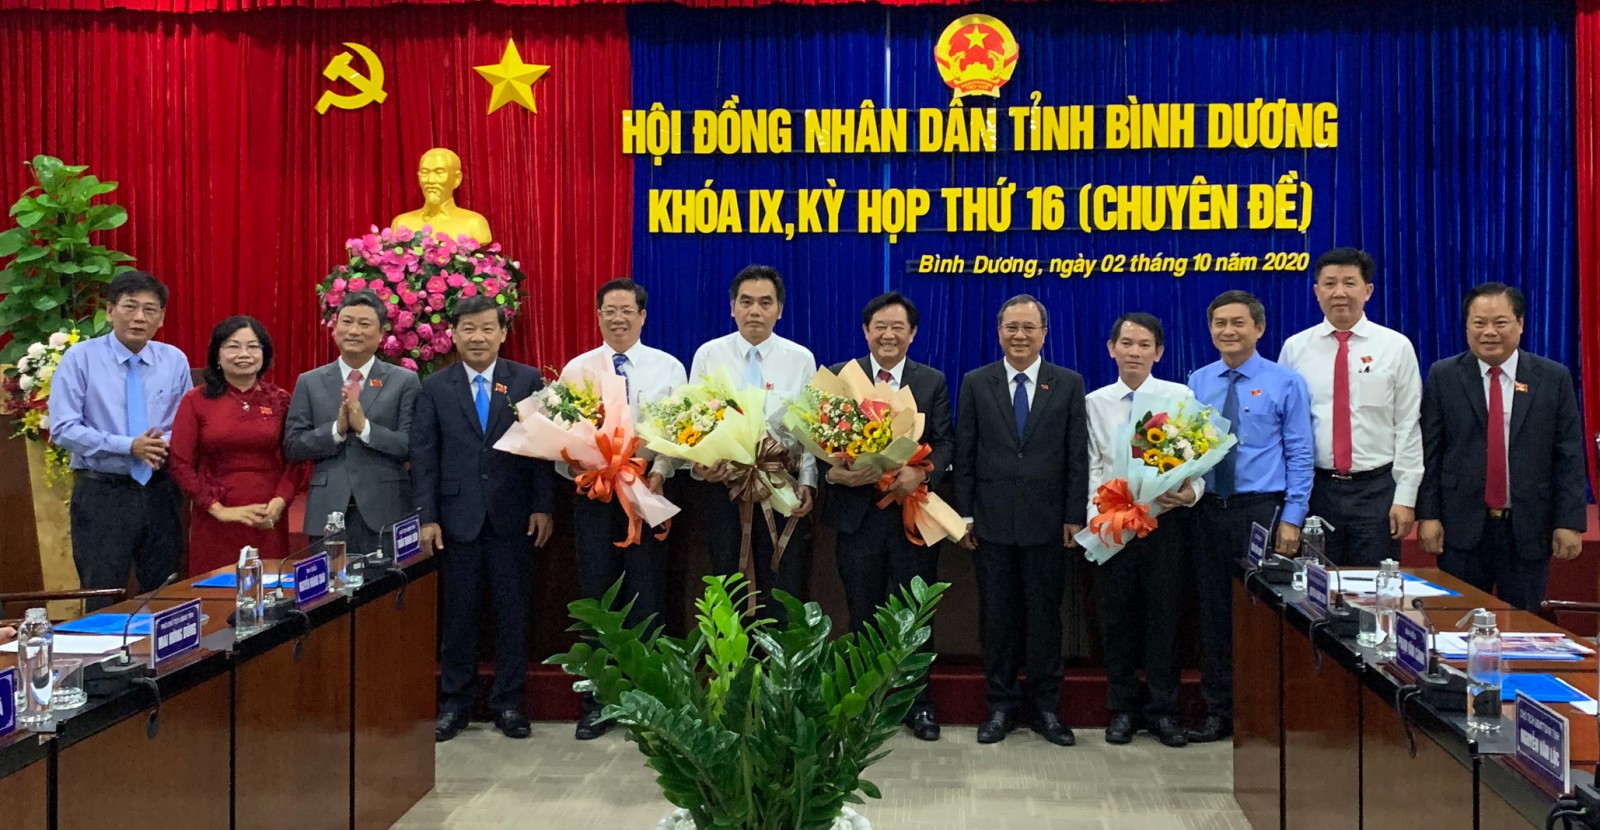 Lãnh đạo tỉnh Bình Dương tặng hoa chúc mừng đồng chí Nguyễn Hoàng Thao và các Ủy viên UBND tỉnh khóa IX, nhiệm kỳ 2016-2021. Ảnh: Xuân Thi